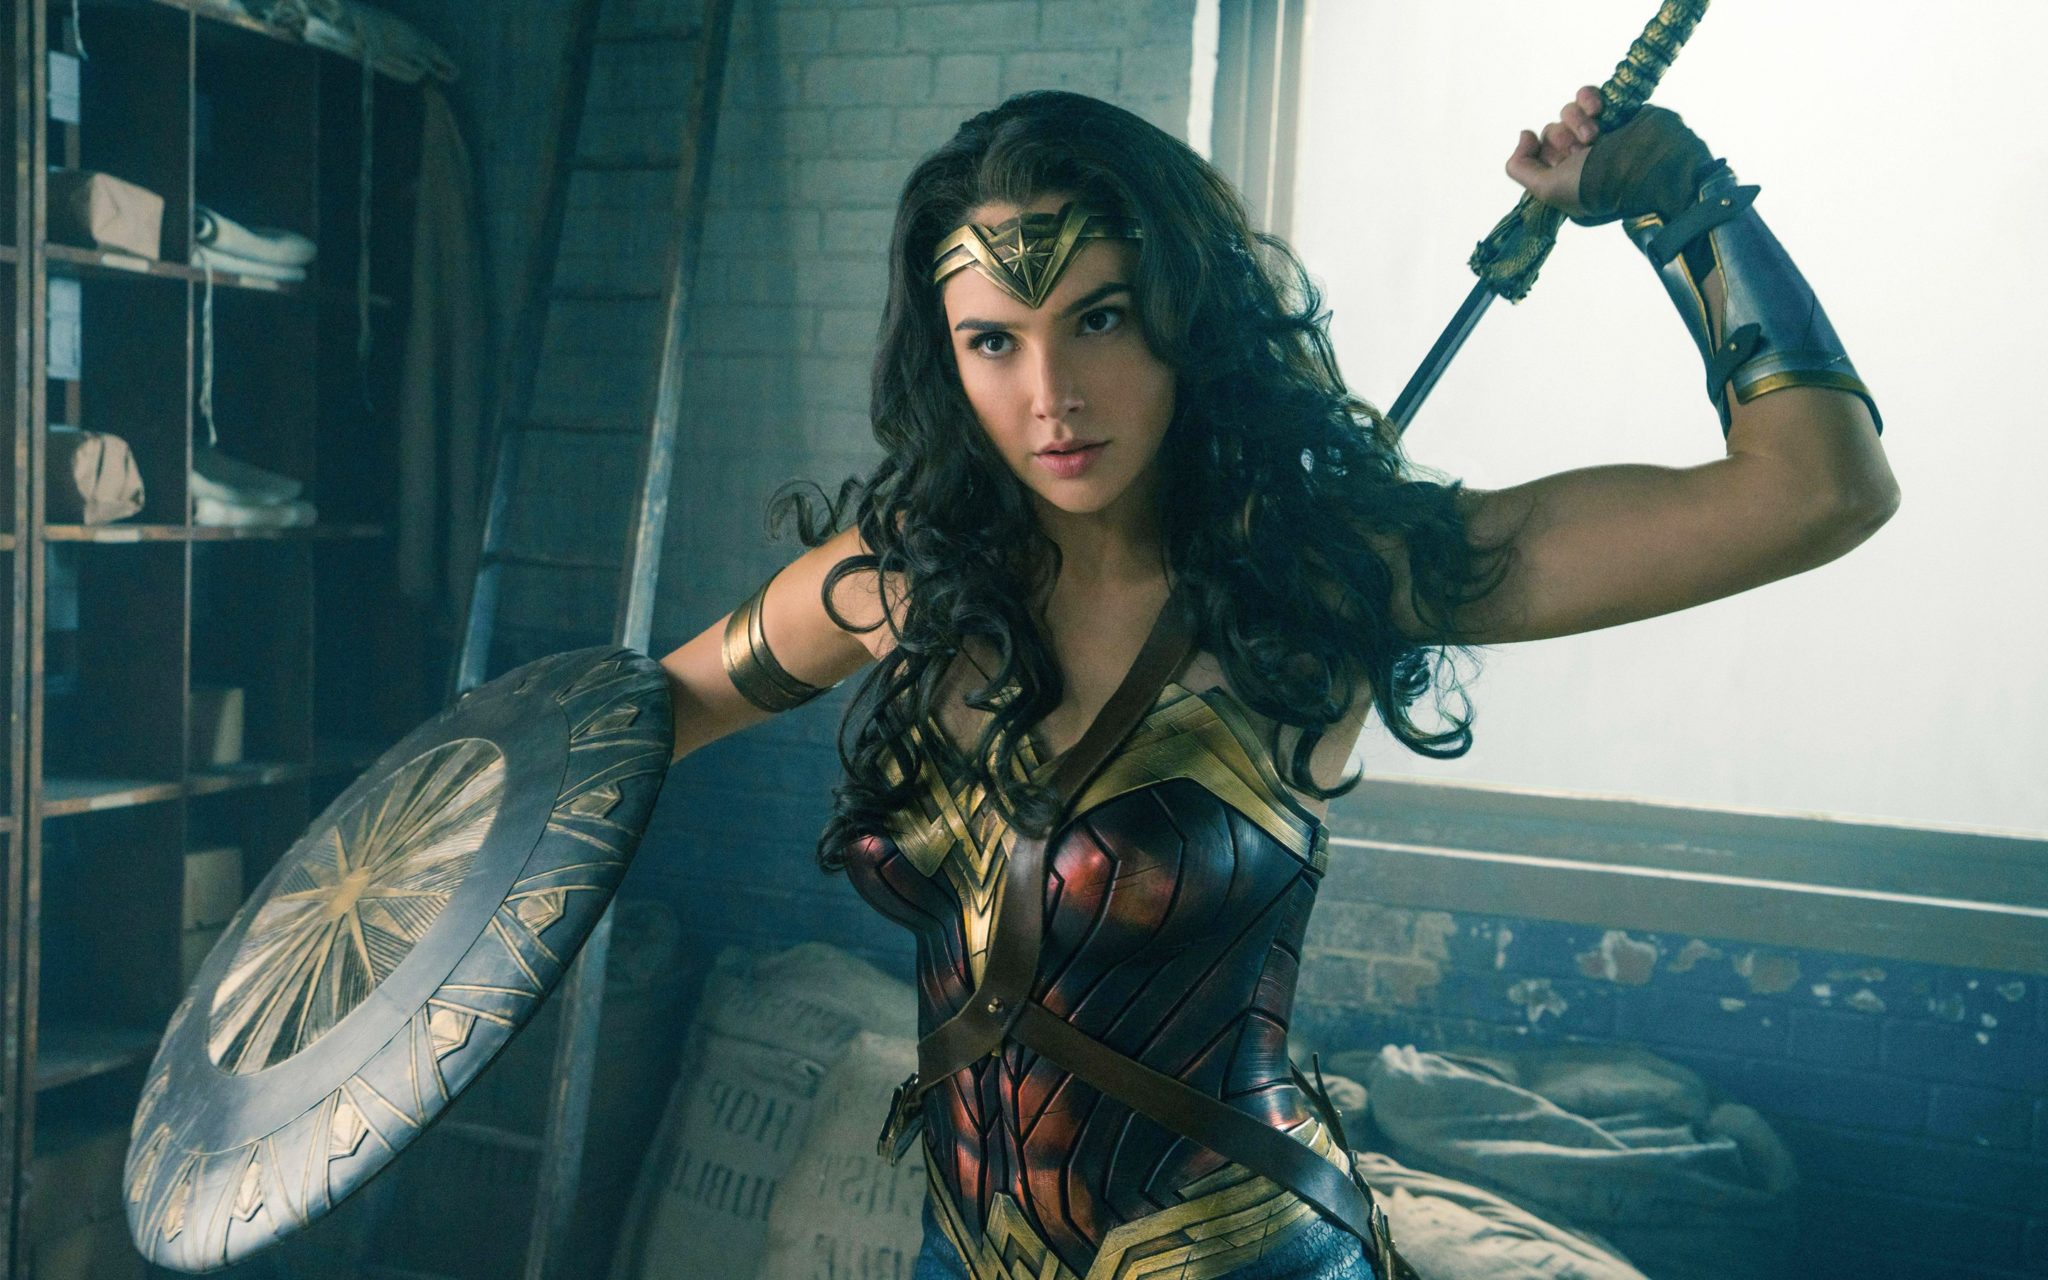 La Rentabilidad De “Wonder Woman” Es La Película Más Taquillera Dirigida Por Una Mujer